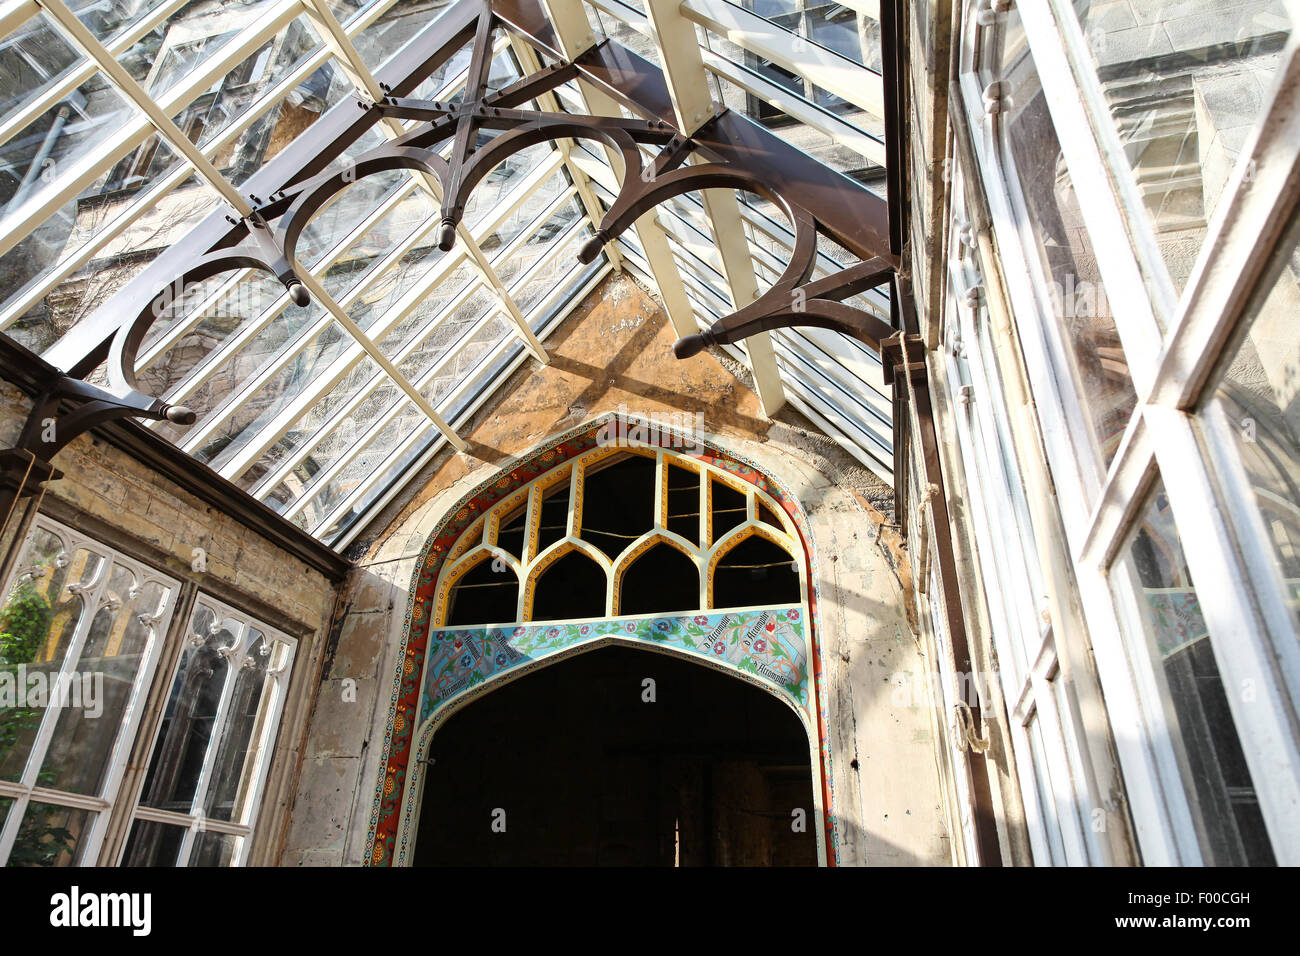 Un conservatoire restauré à l'intérieur de Tours Alton house à l'abandon sur le domaine Theme Park Gardens Staffordshire England UK Banque D'Images